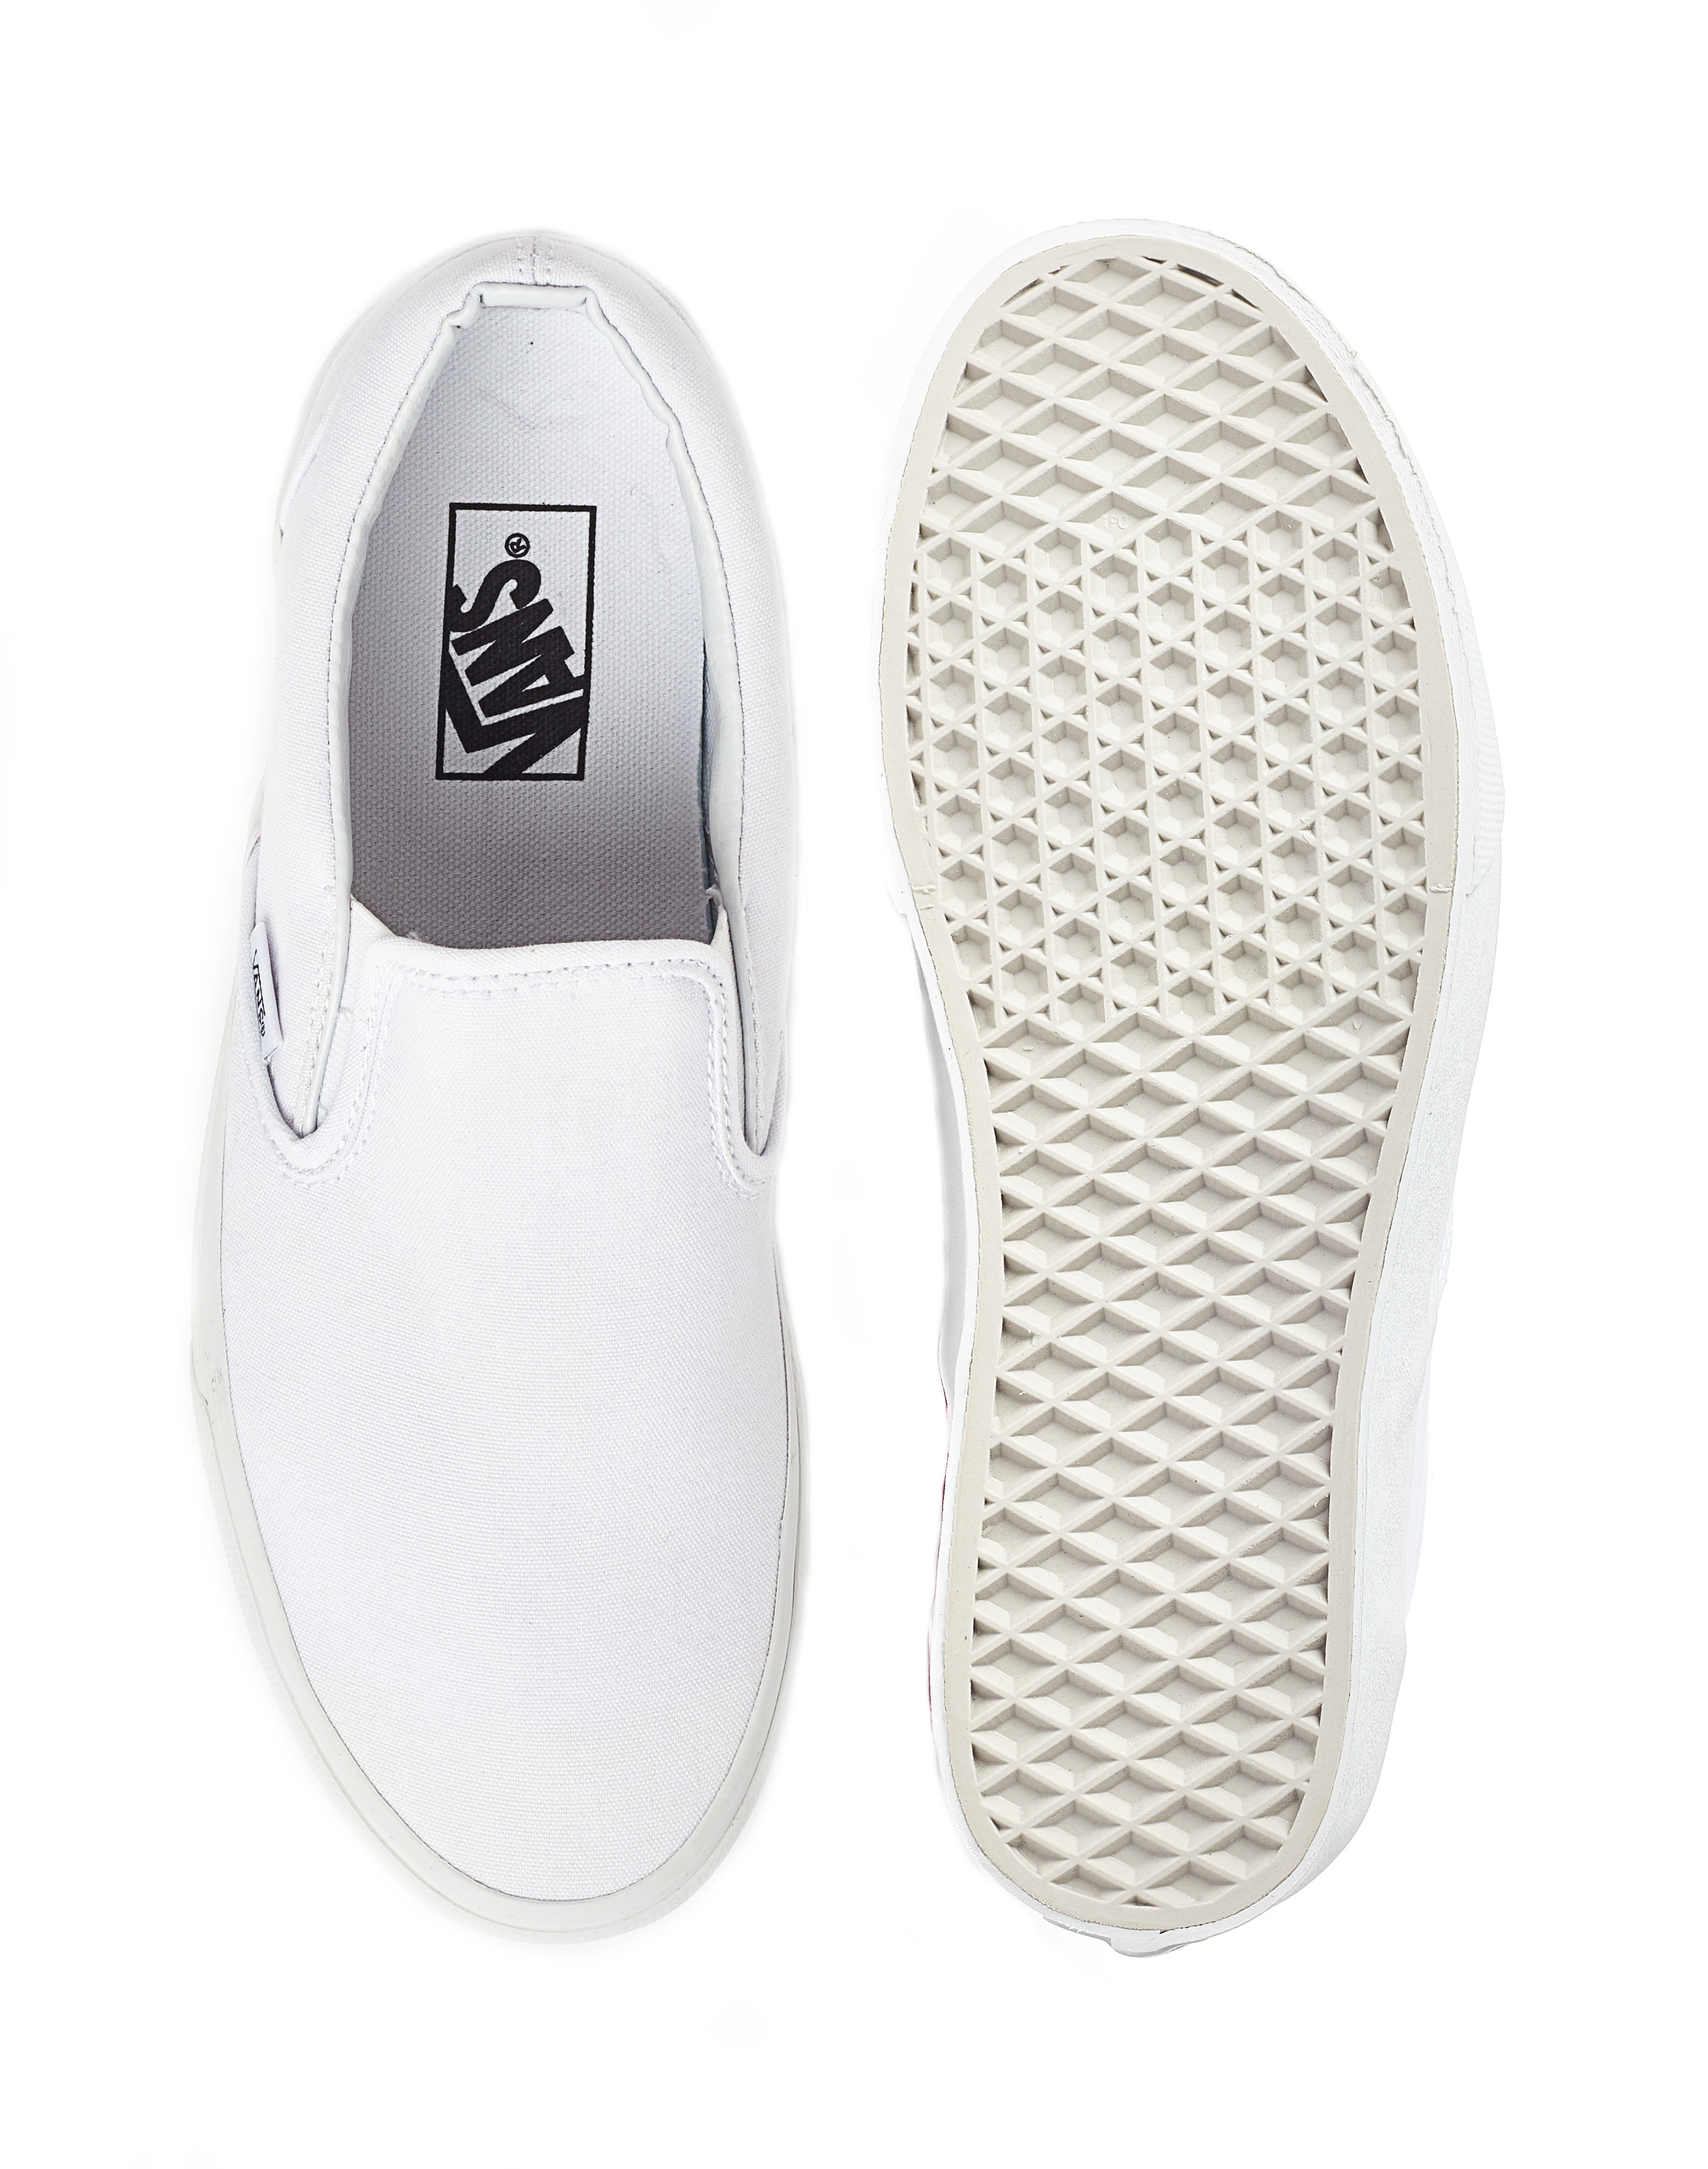 Lyst - Vans Classic Slip-on Round Toe Canvas Skate Shoe in White for Men